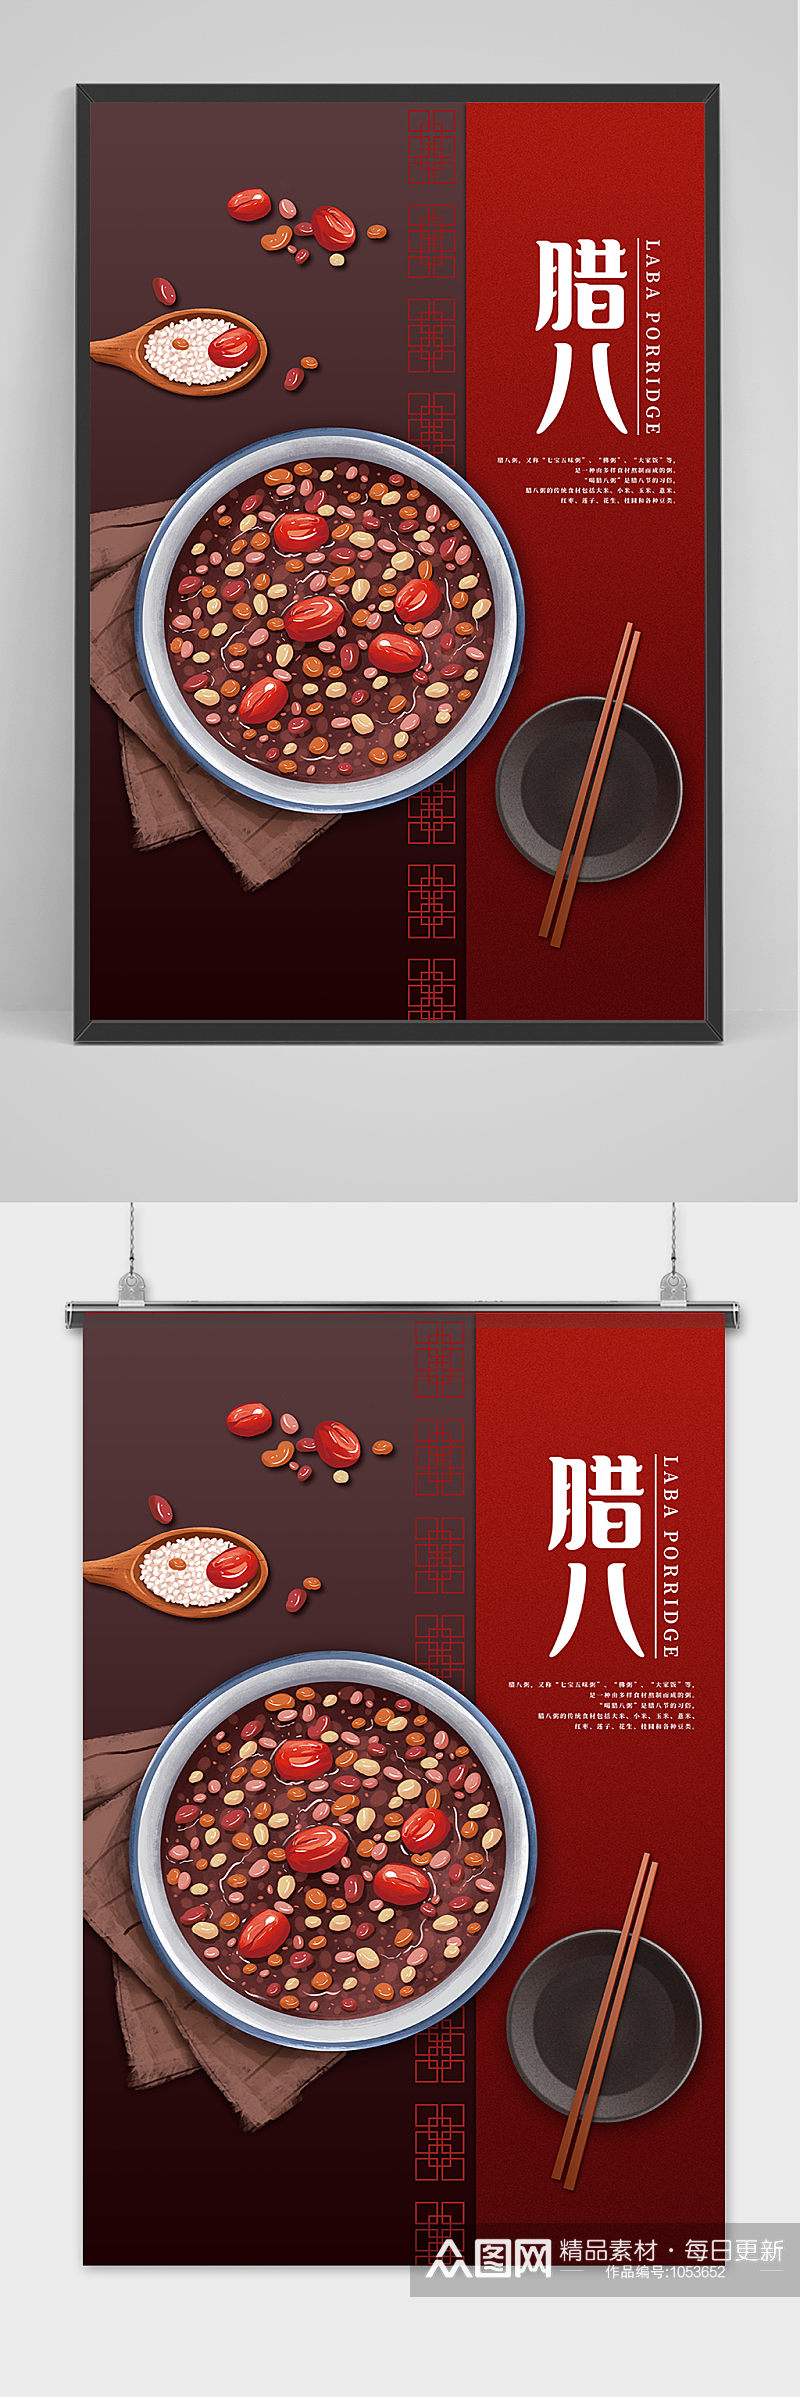 中国传统佳节腊八节海报设计素材